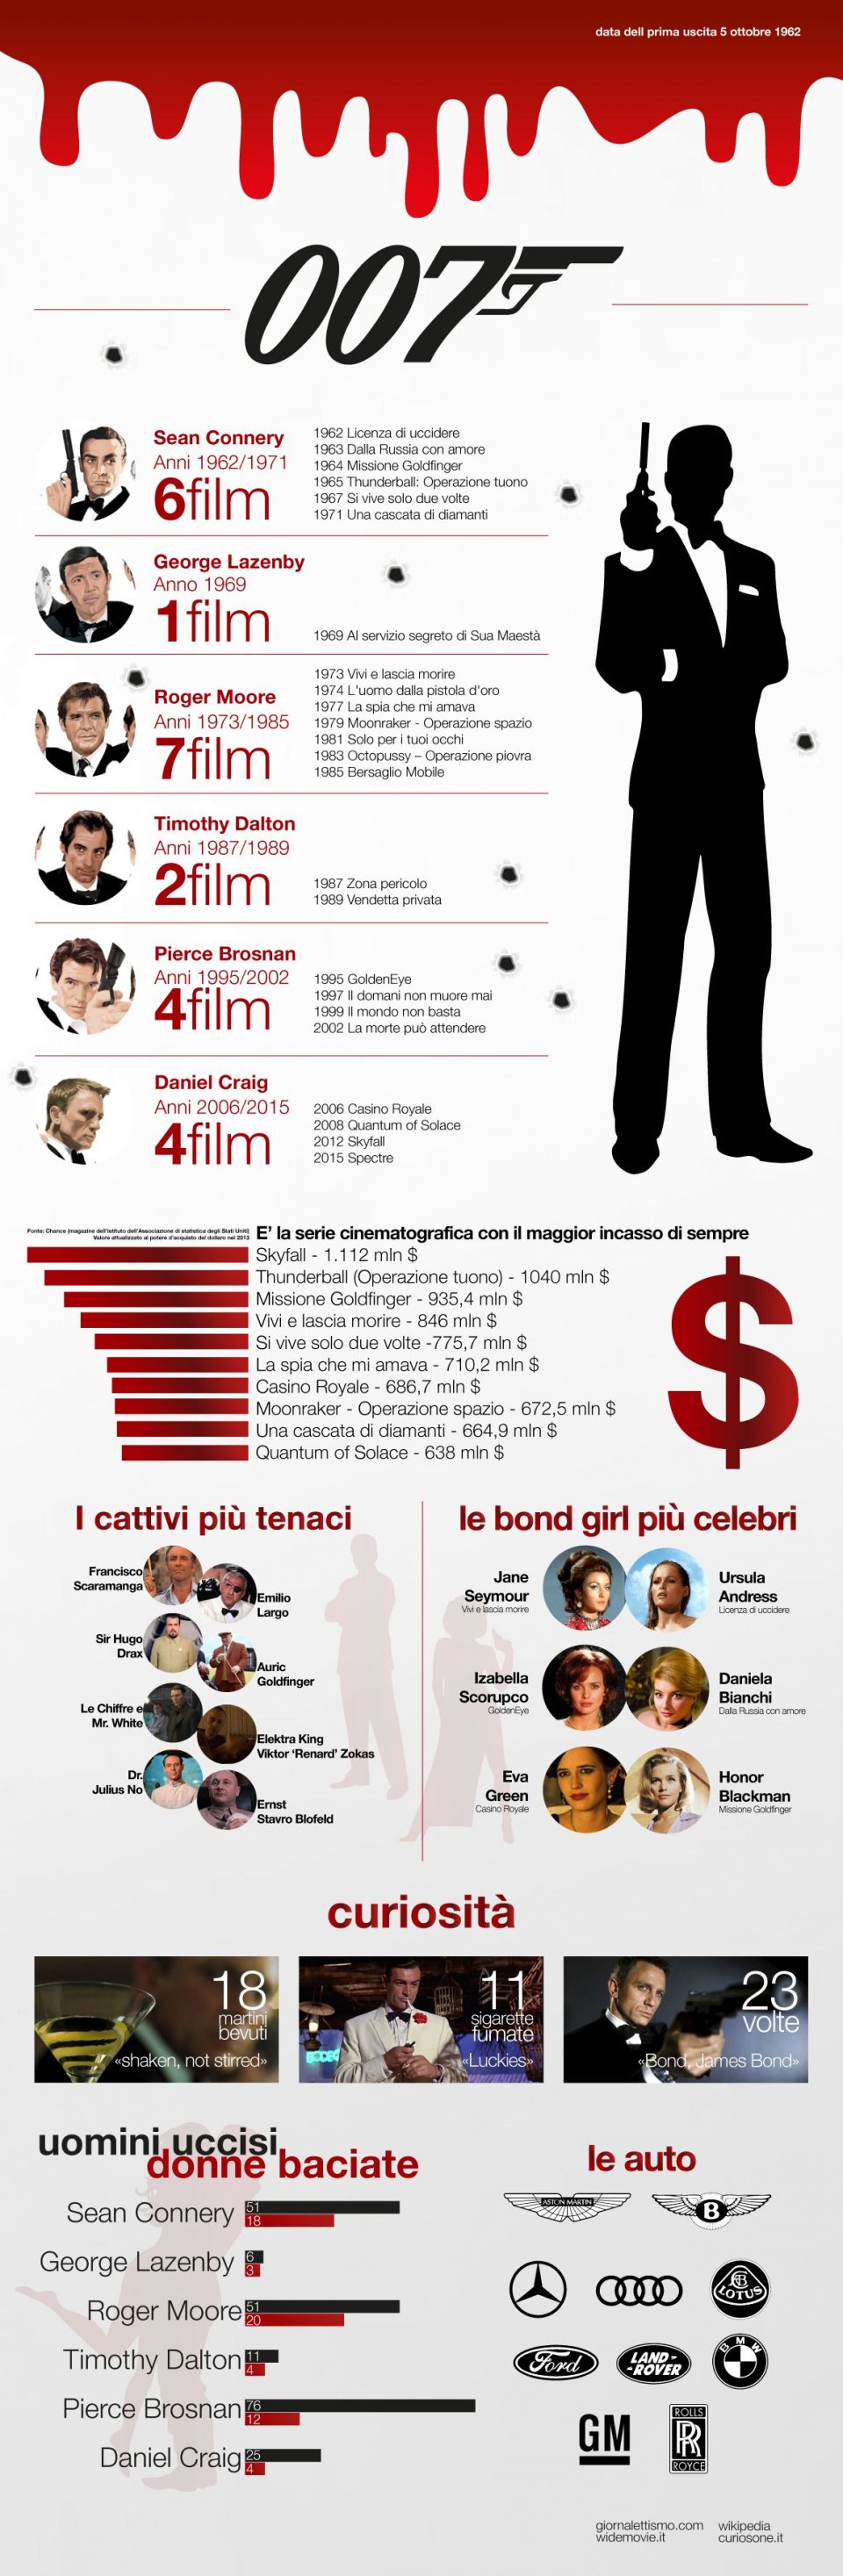 Agente 007, licenza di uccidere: un'infografica celebra l'anniversario dell'uscita del primo film su James Bond